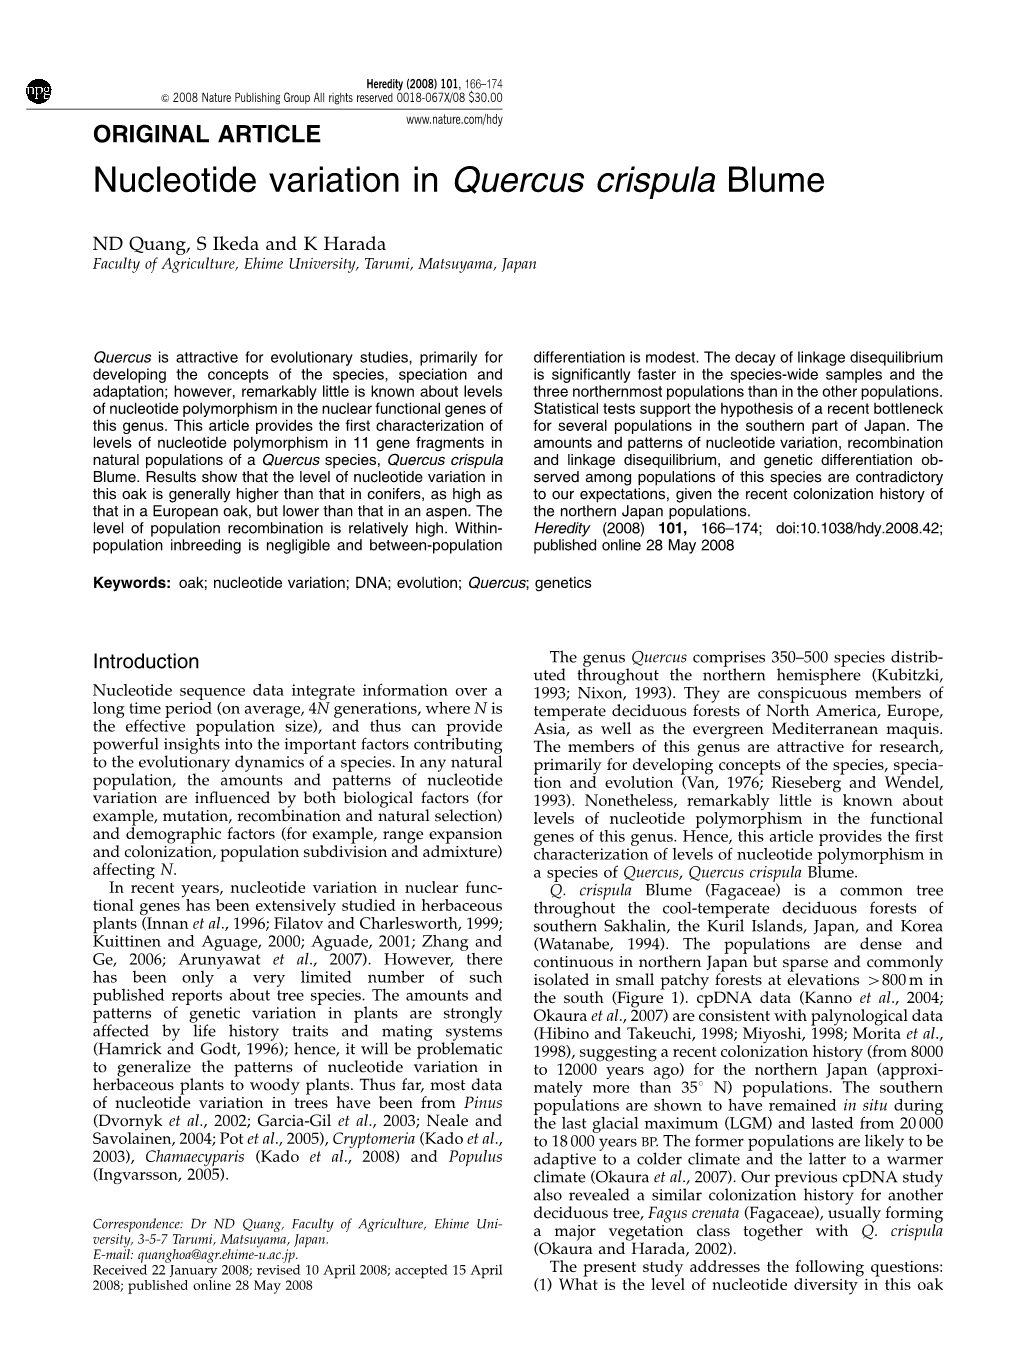 Nucleotide Variation in Quercus Crispula Blume